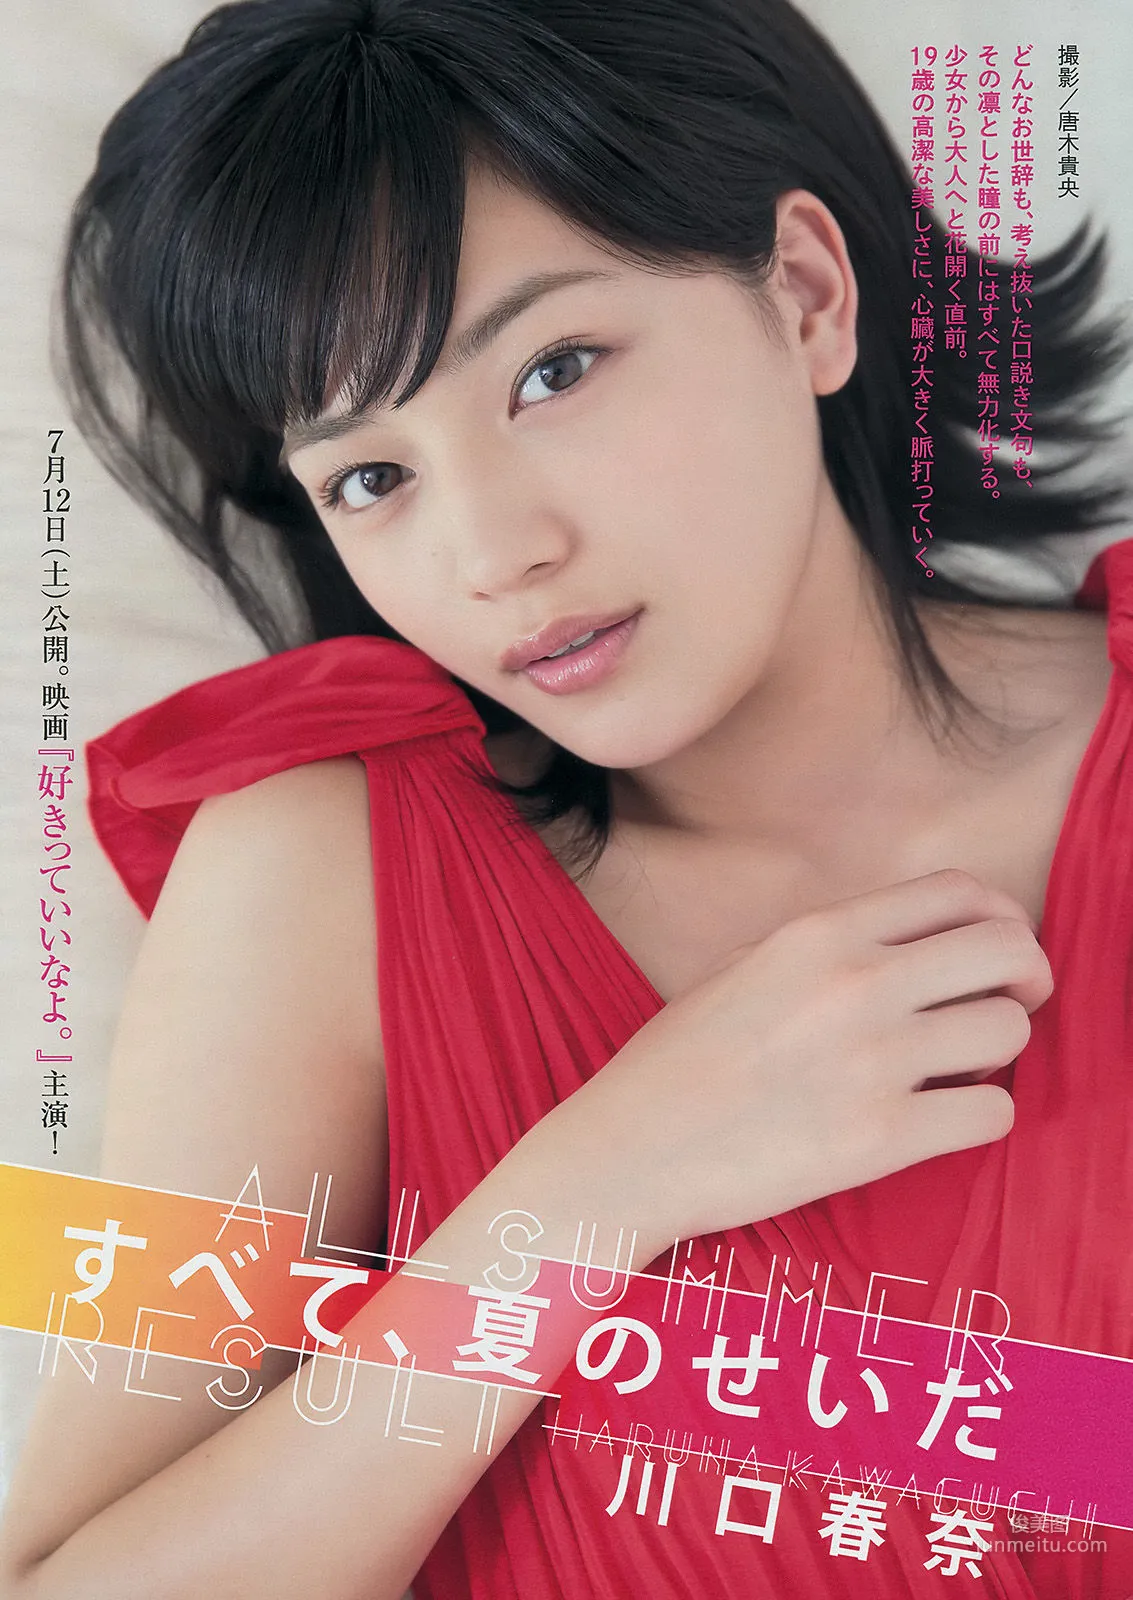 [Young Magazine] 久松郁实 川口春奈 2014年No.32 写真杂志9